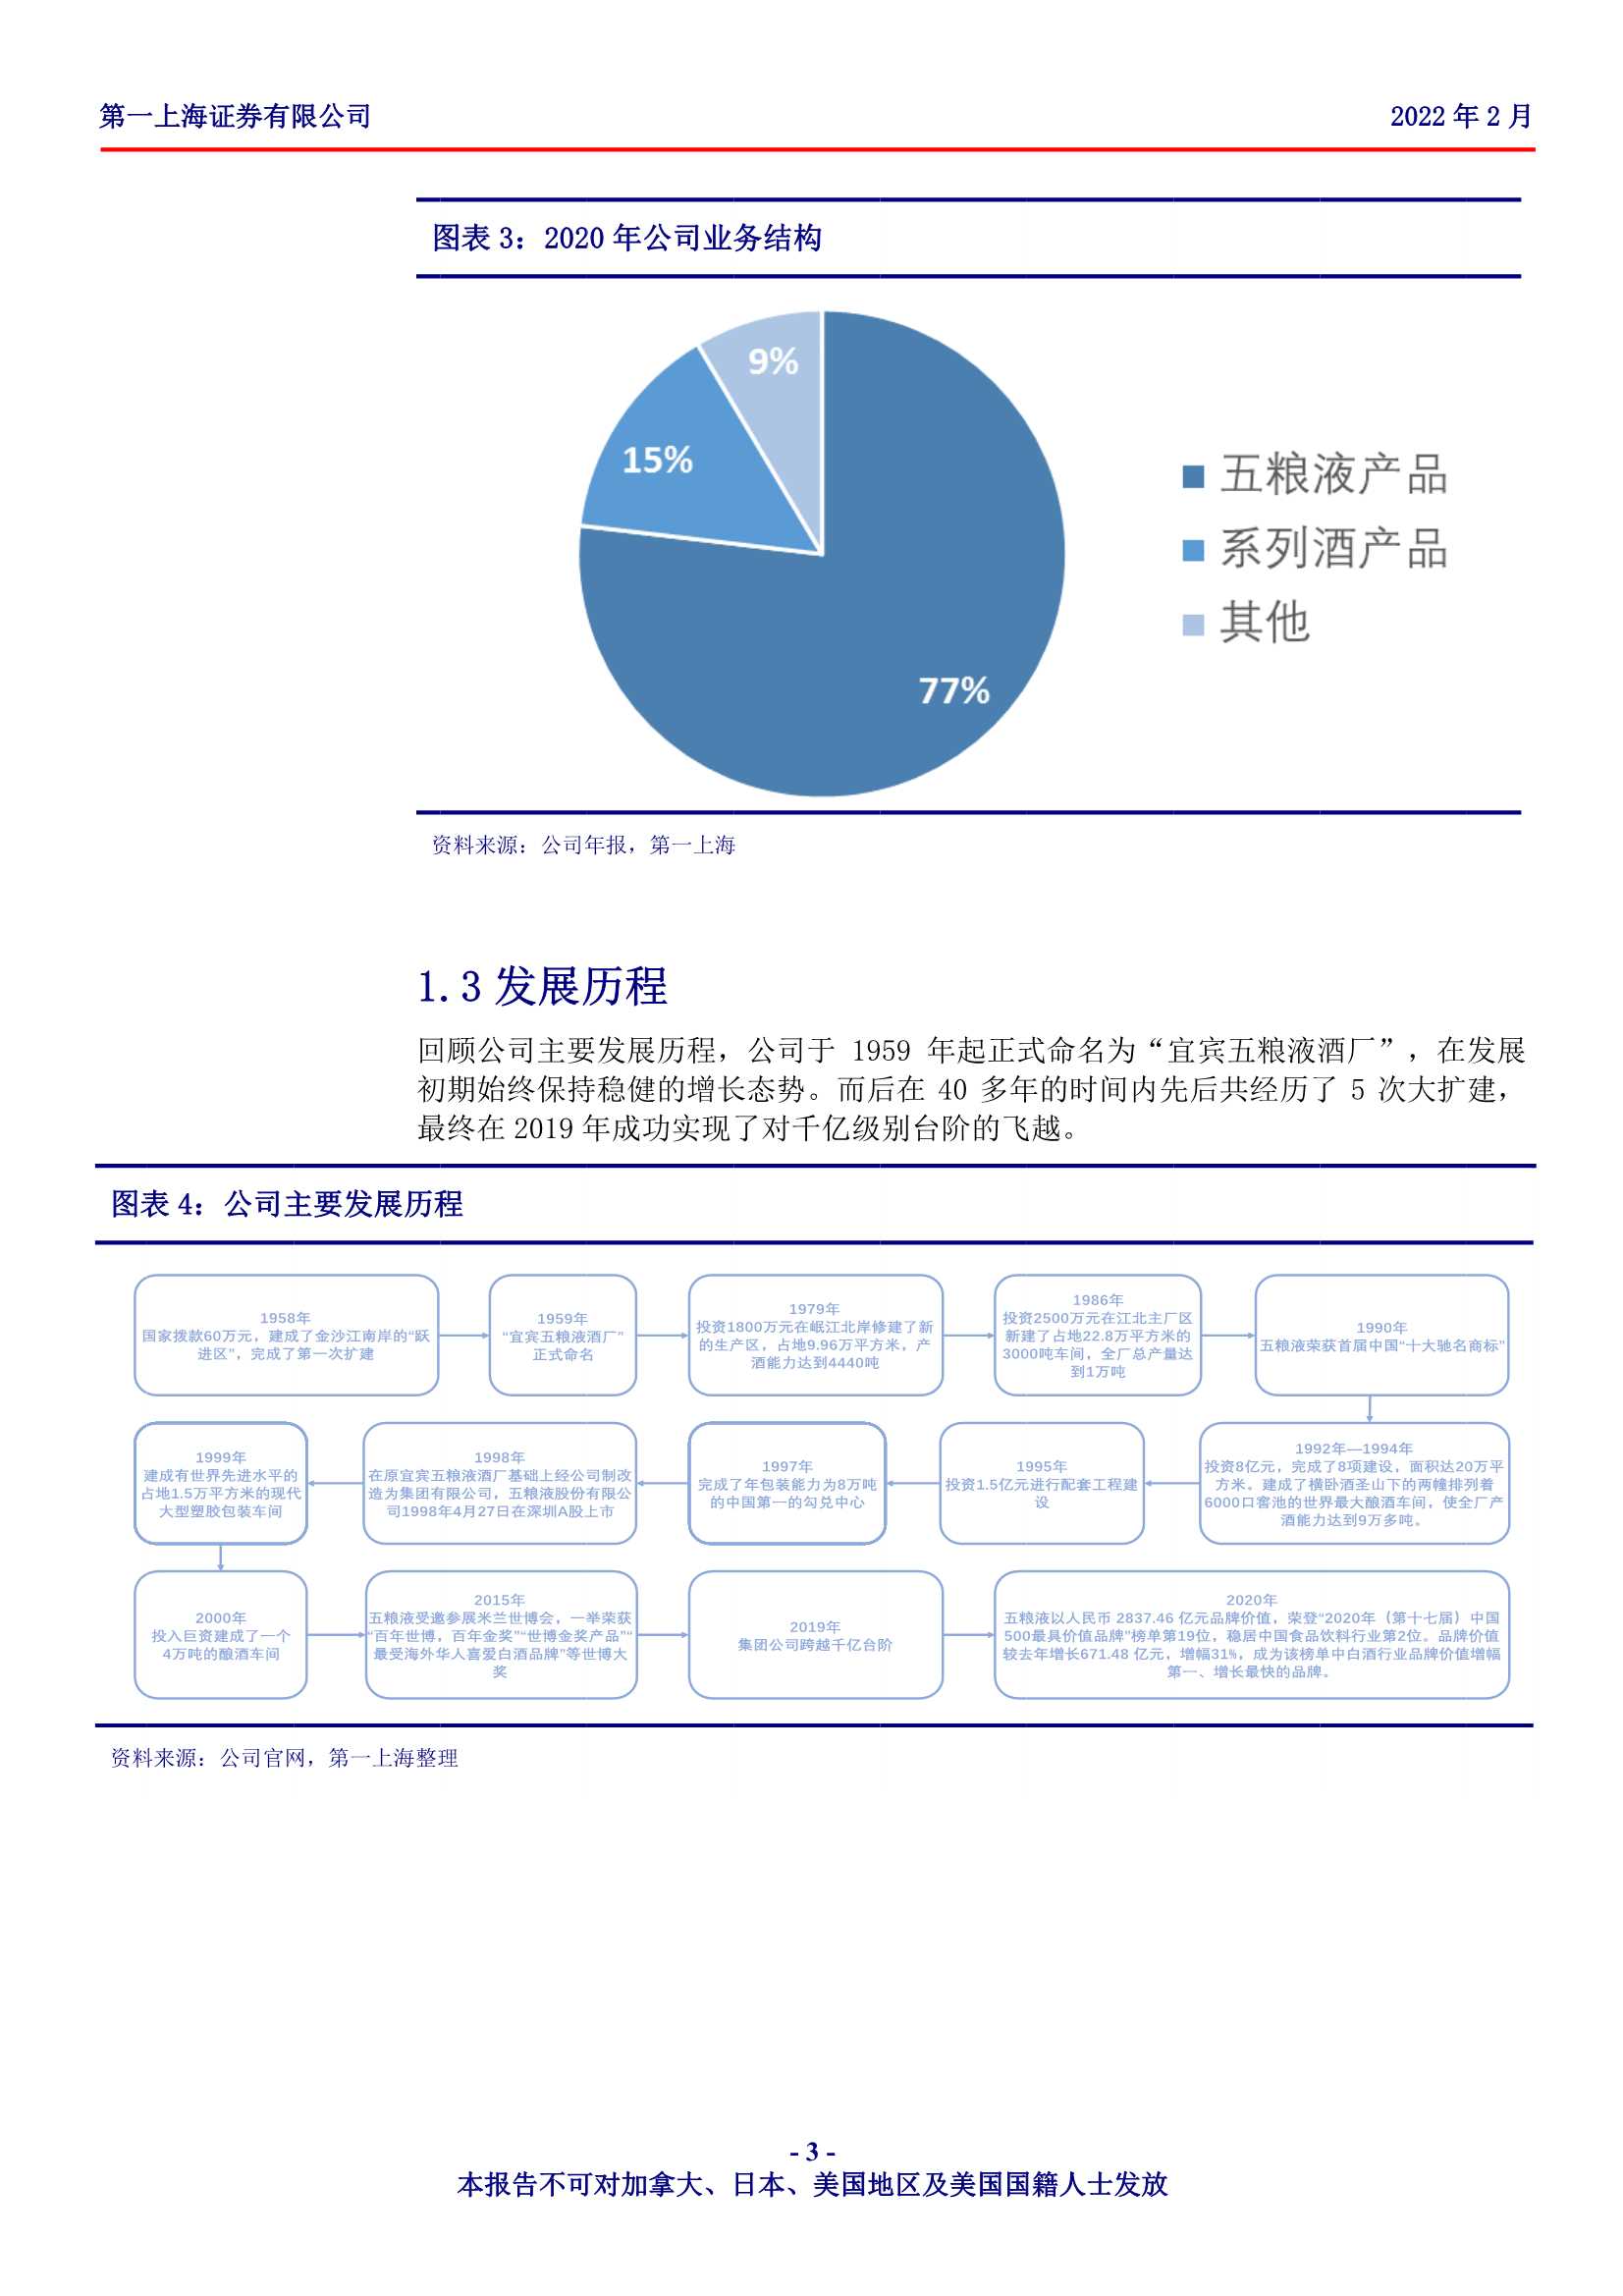 第一上海-五粮液-000858-浓香王长期核心竞争优势显著，管理层顺利调整有望实现估值修复-20220221-25页